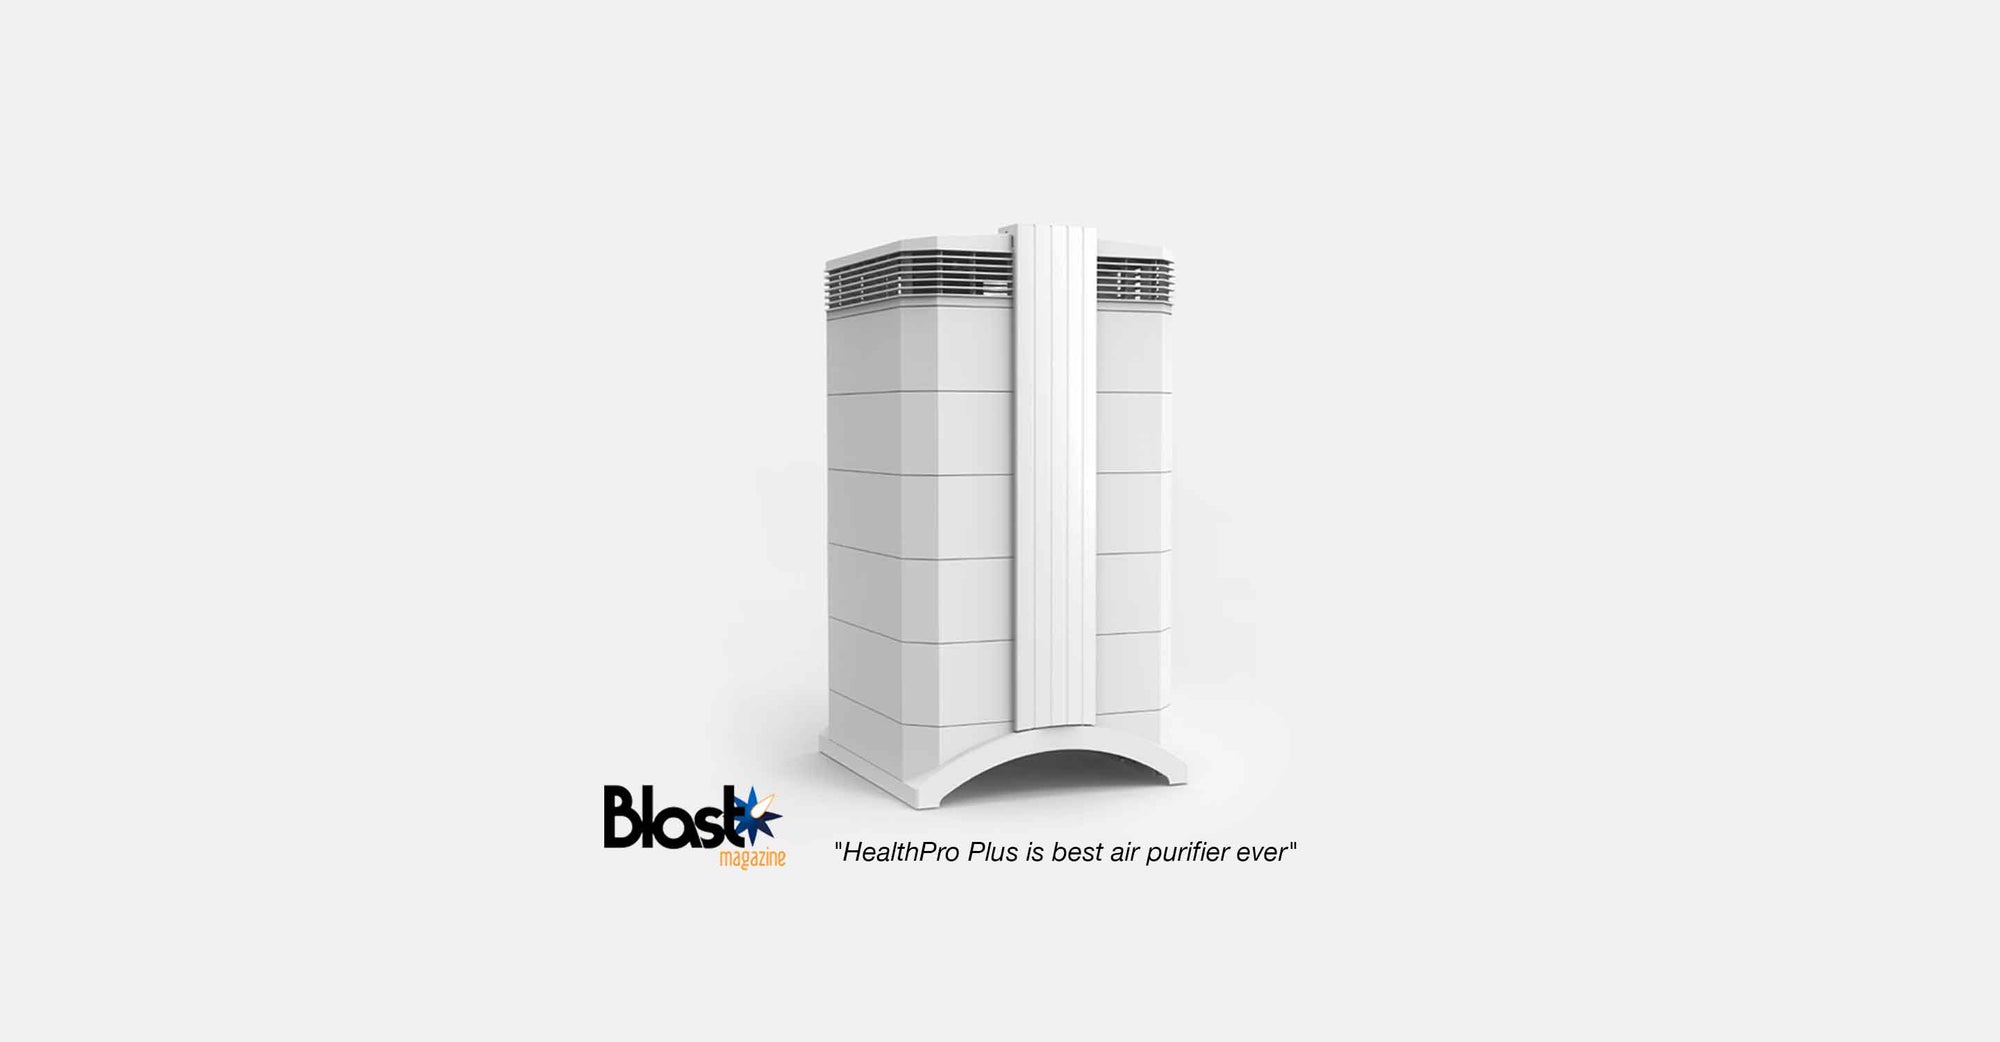 Blast Magazine: “HealthPro Plus is best air purifier ever.”